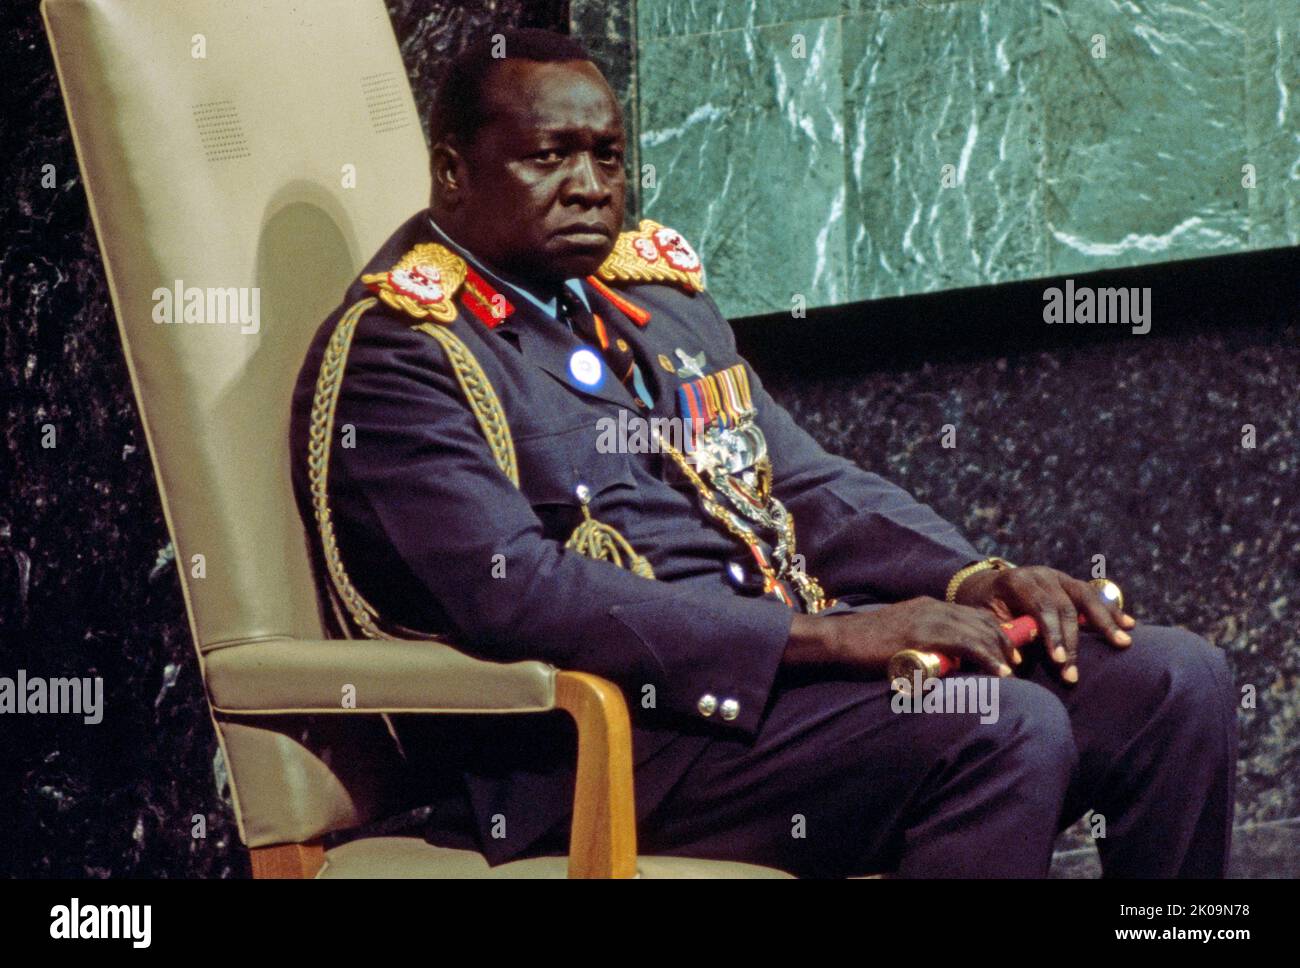 IDI Amin Dada Oumee (1925 - 2003) war ein ugandischer Militäroffizier, der von 1971 bis 1979 als dritter Präsident Ugandas und de facto als Militärdiktator fungierte. Er gilt als einer der brutalsten Despoten der Weltgeschichte. Stockfoto